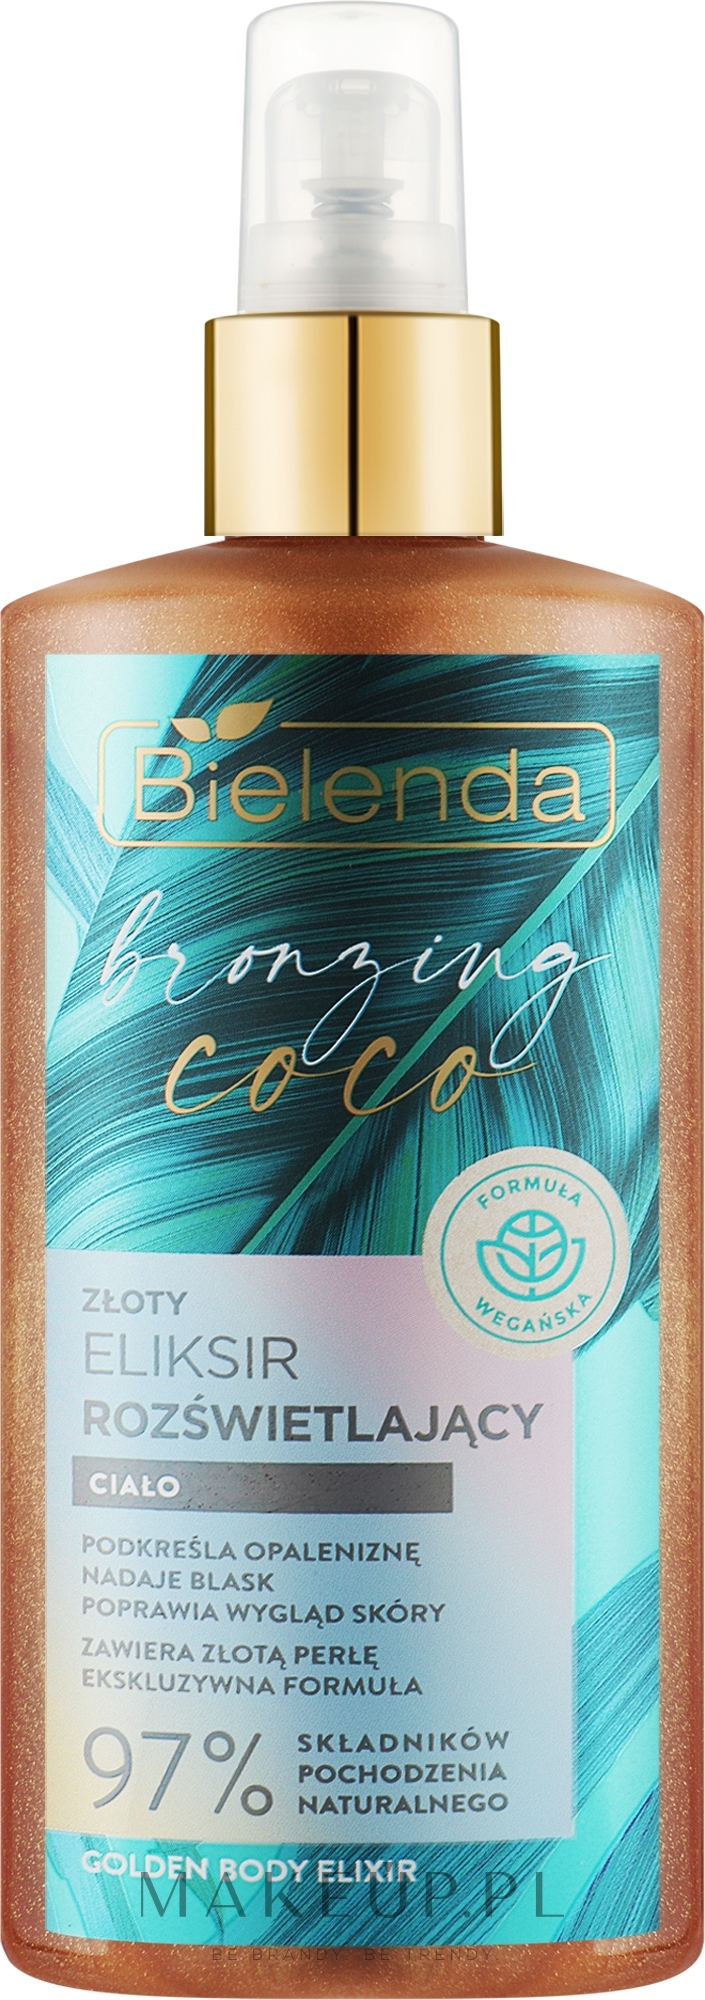 Złoty eliksir rozświetlający do ciała - Bielenda Bronzing Coco Golden Body Elixir — Zdjęcie 150 ml